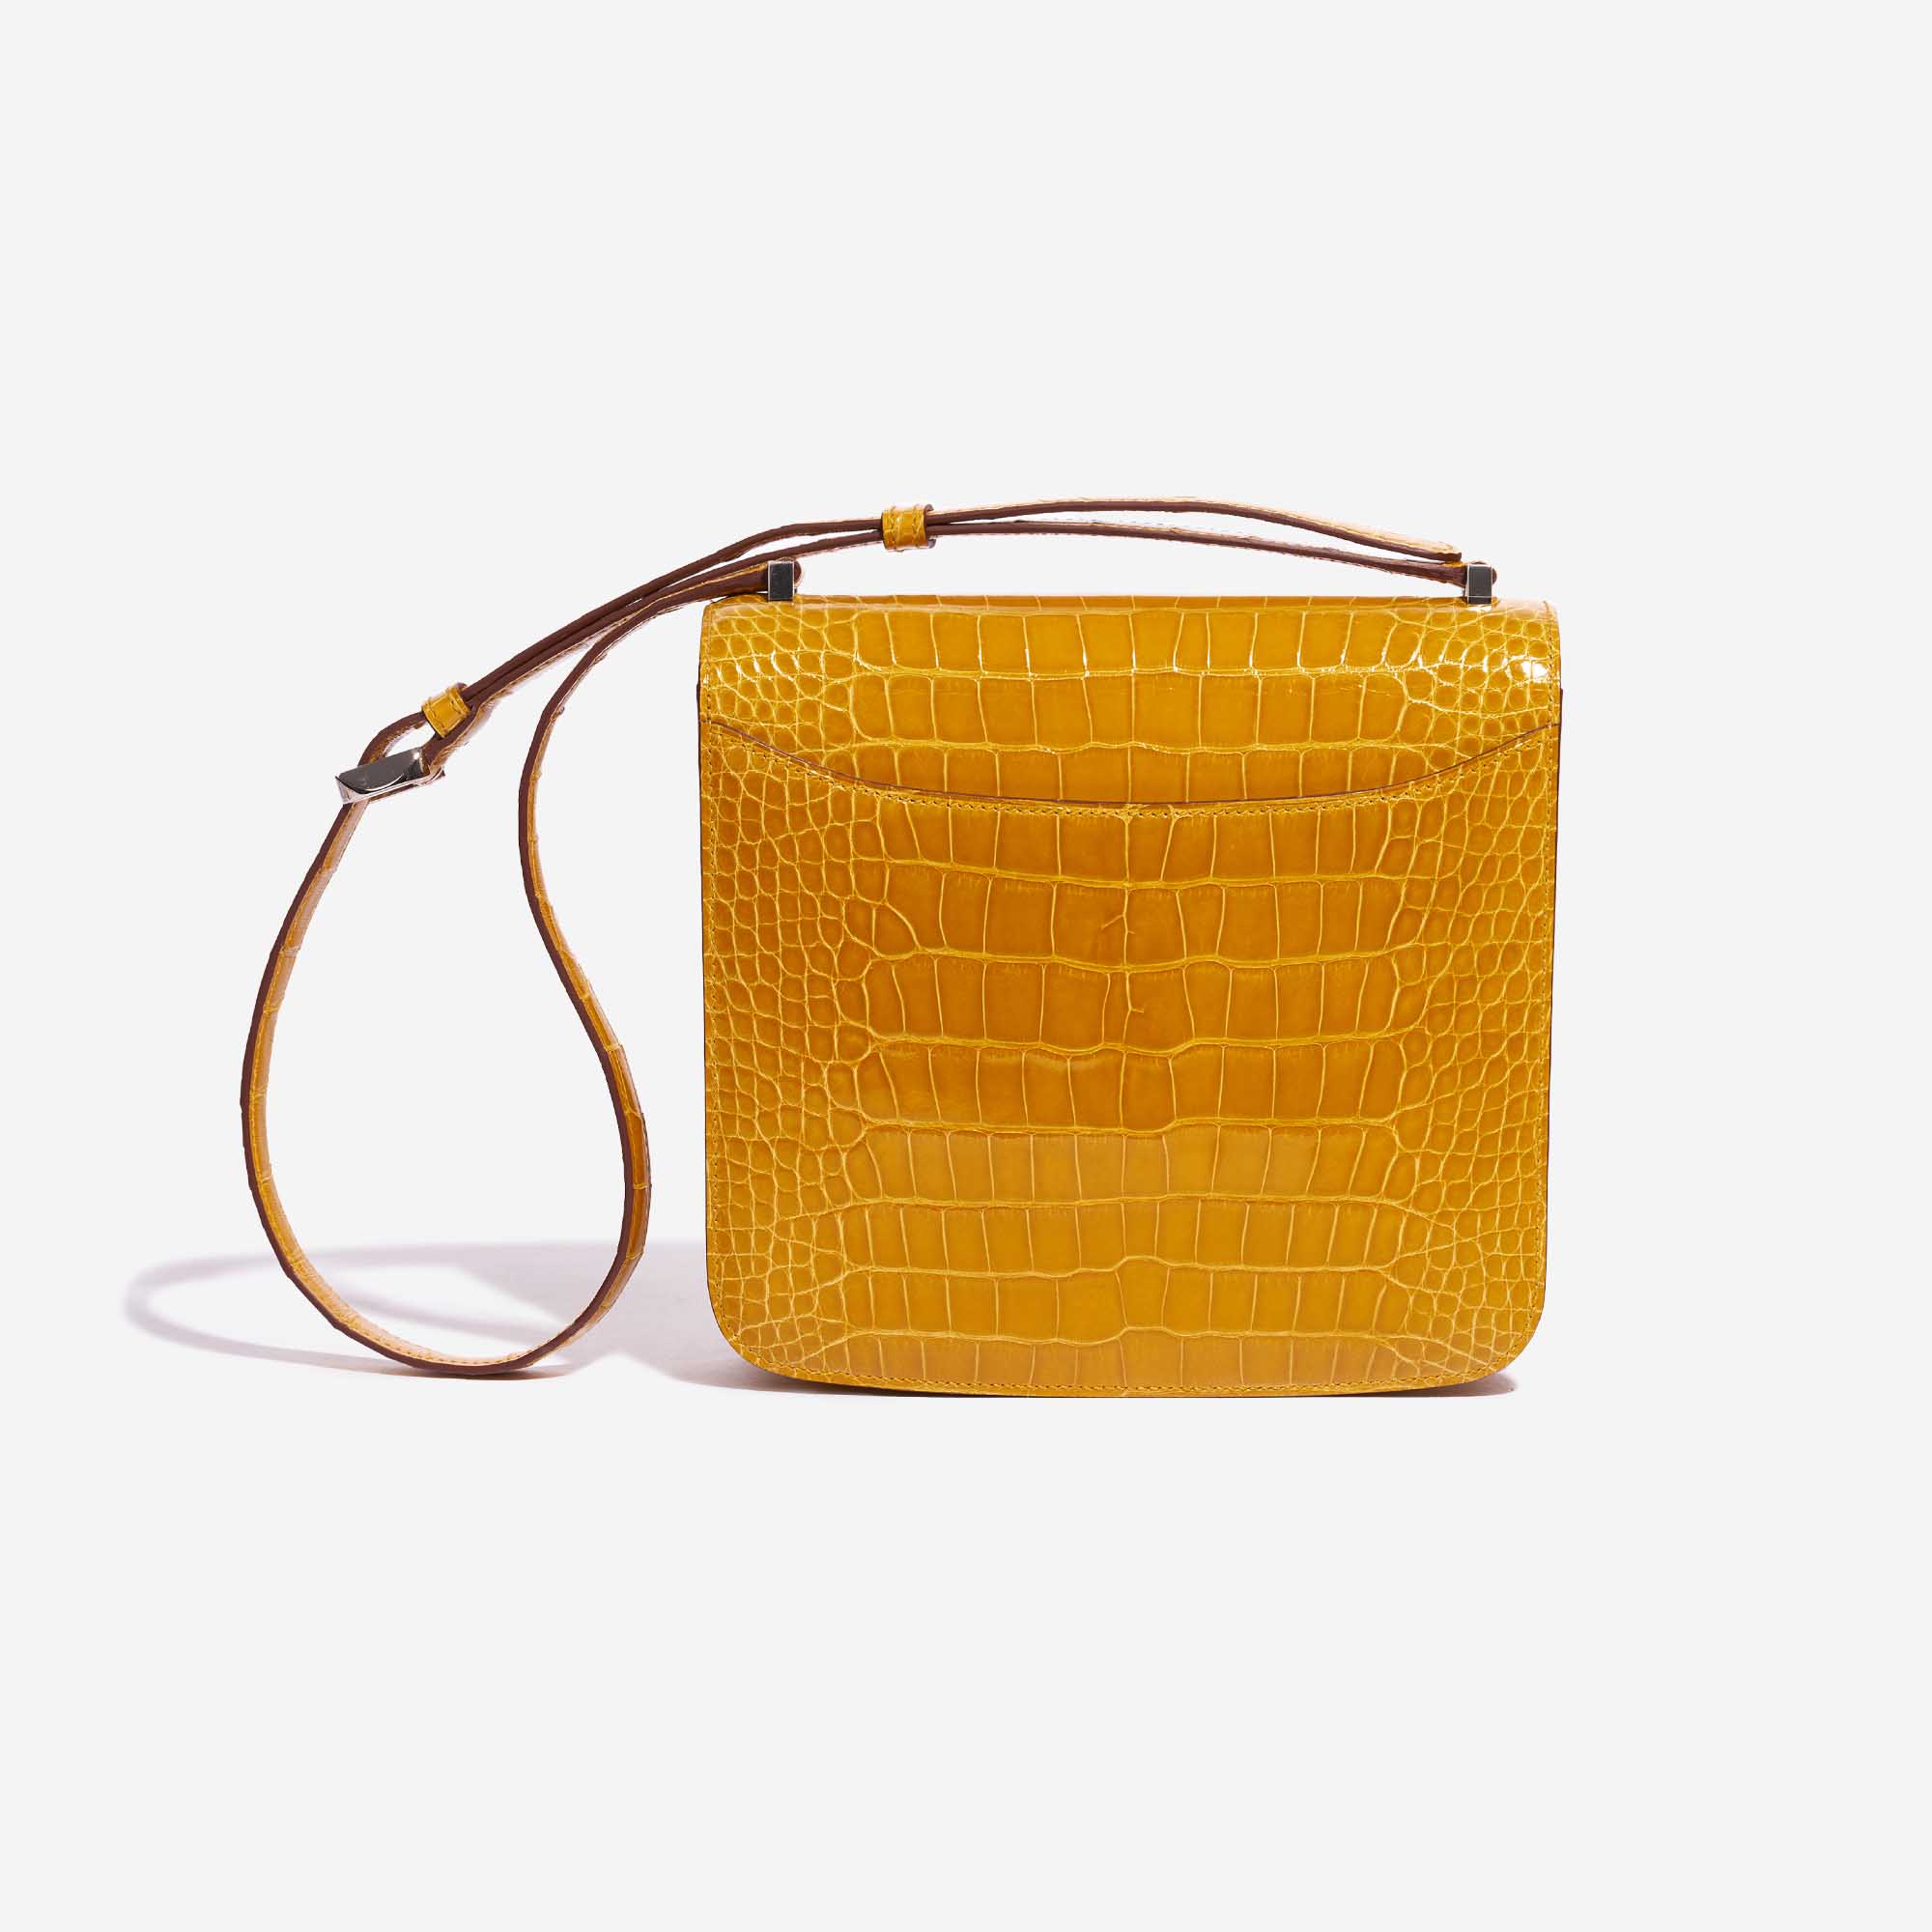 Gebrauchte Hermès Tasche 2002 Alligator Jaune Ambre Yellow Back | Verkaufen Sie Ihre Designer-Tasche auf Saclab.com